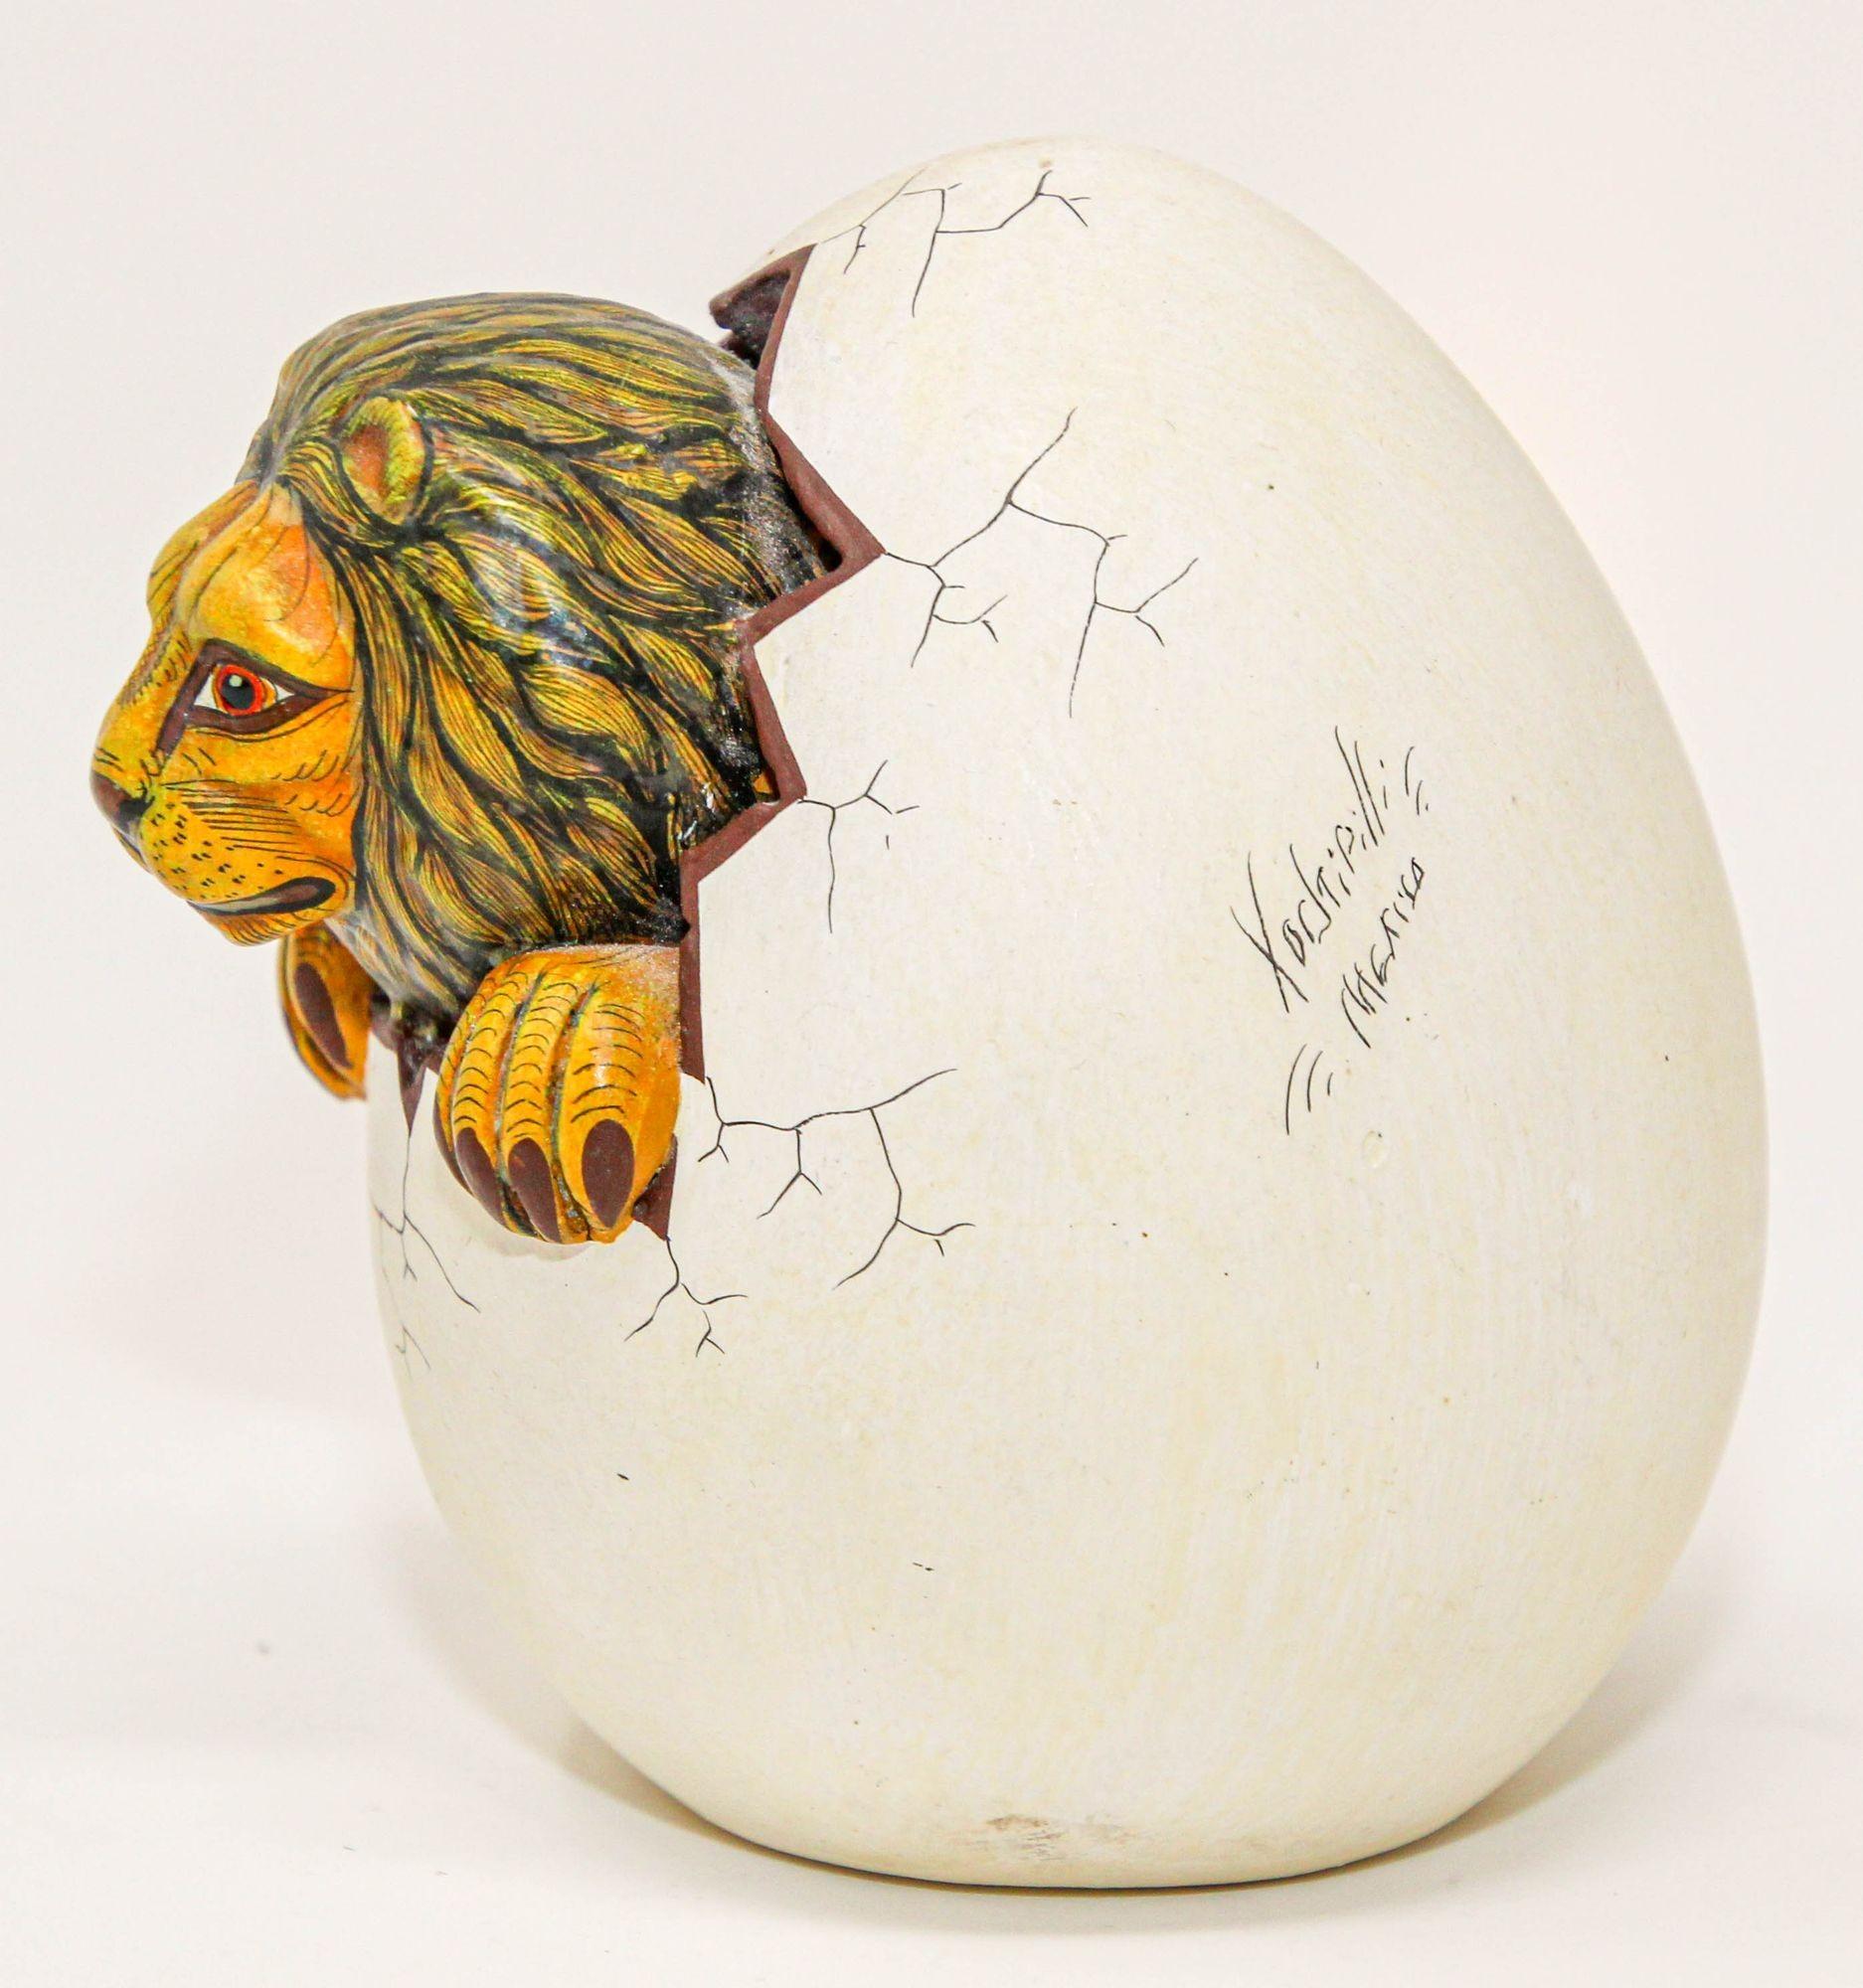 Petite sculpture d'art en céramique représentant un lion dans un œuf en train de couver.
Petite sculpture réaliste d'un lion en train de couver un œuf.
Il s'agit d'une céramique à base d'argile, peinte à la main dans des couleurs vives, avec des